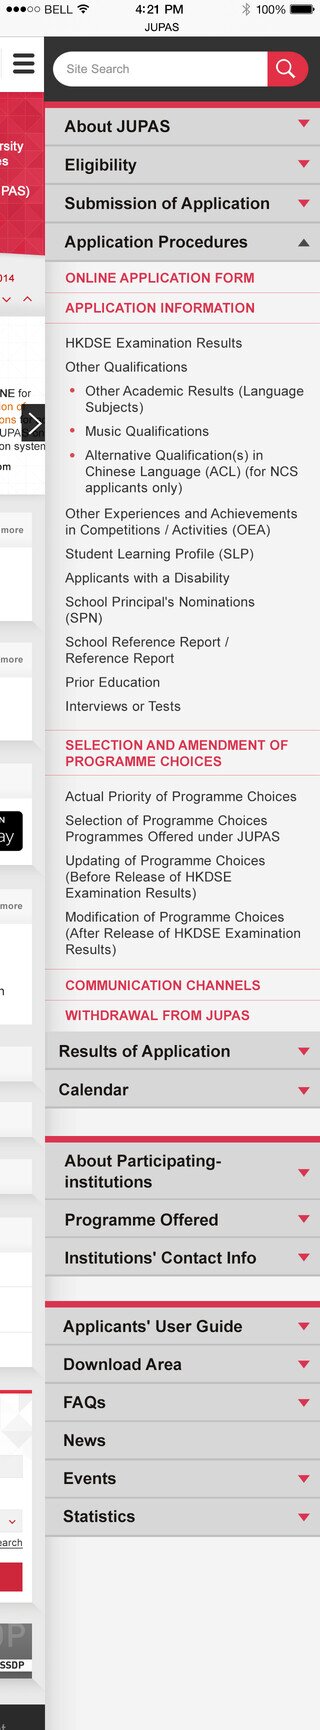 JUPAS website screenshot for mobile version 2 of 6